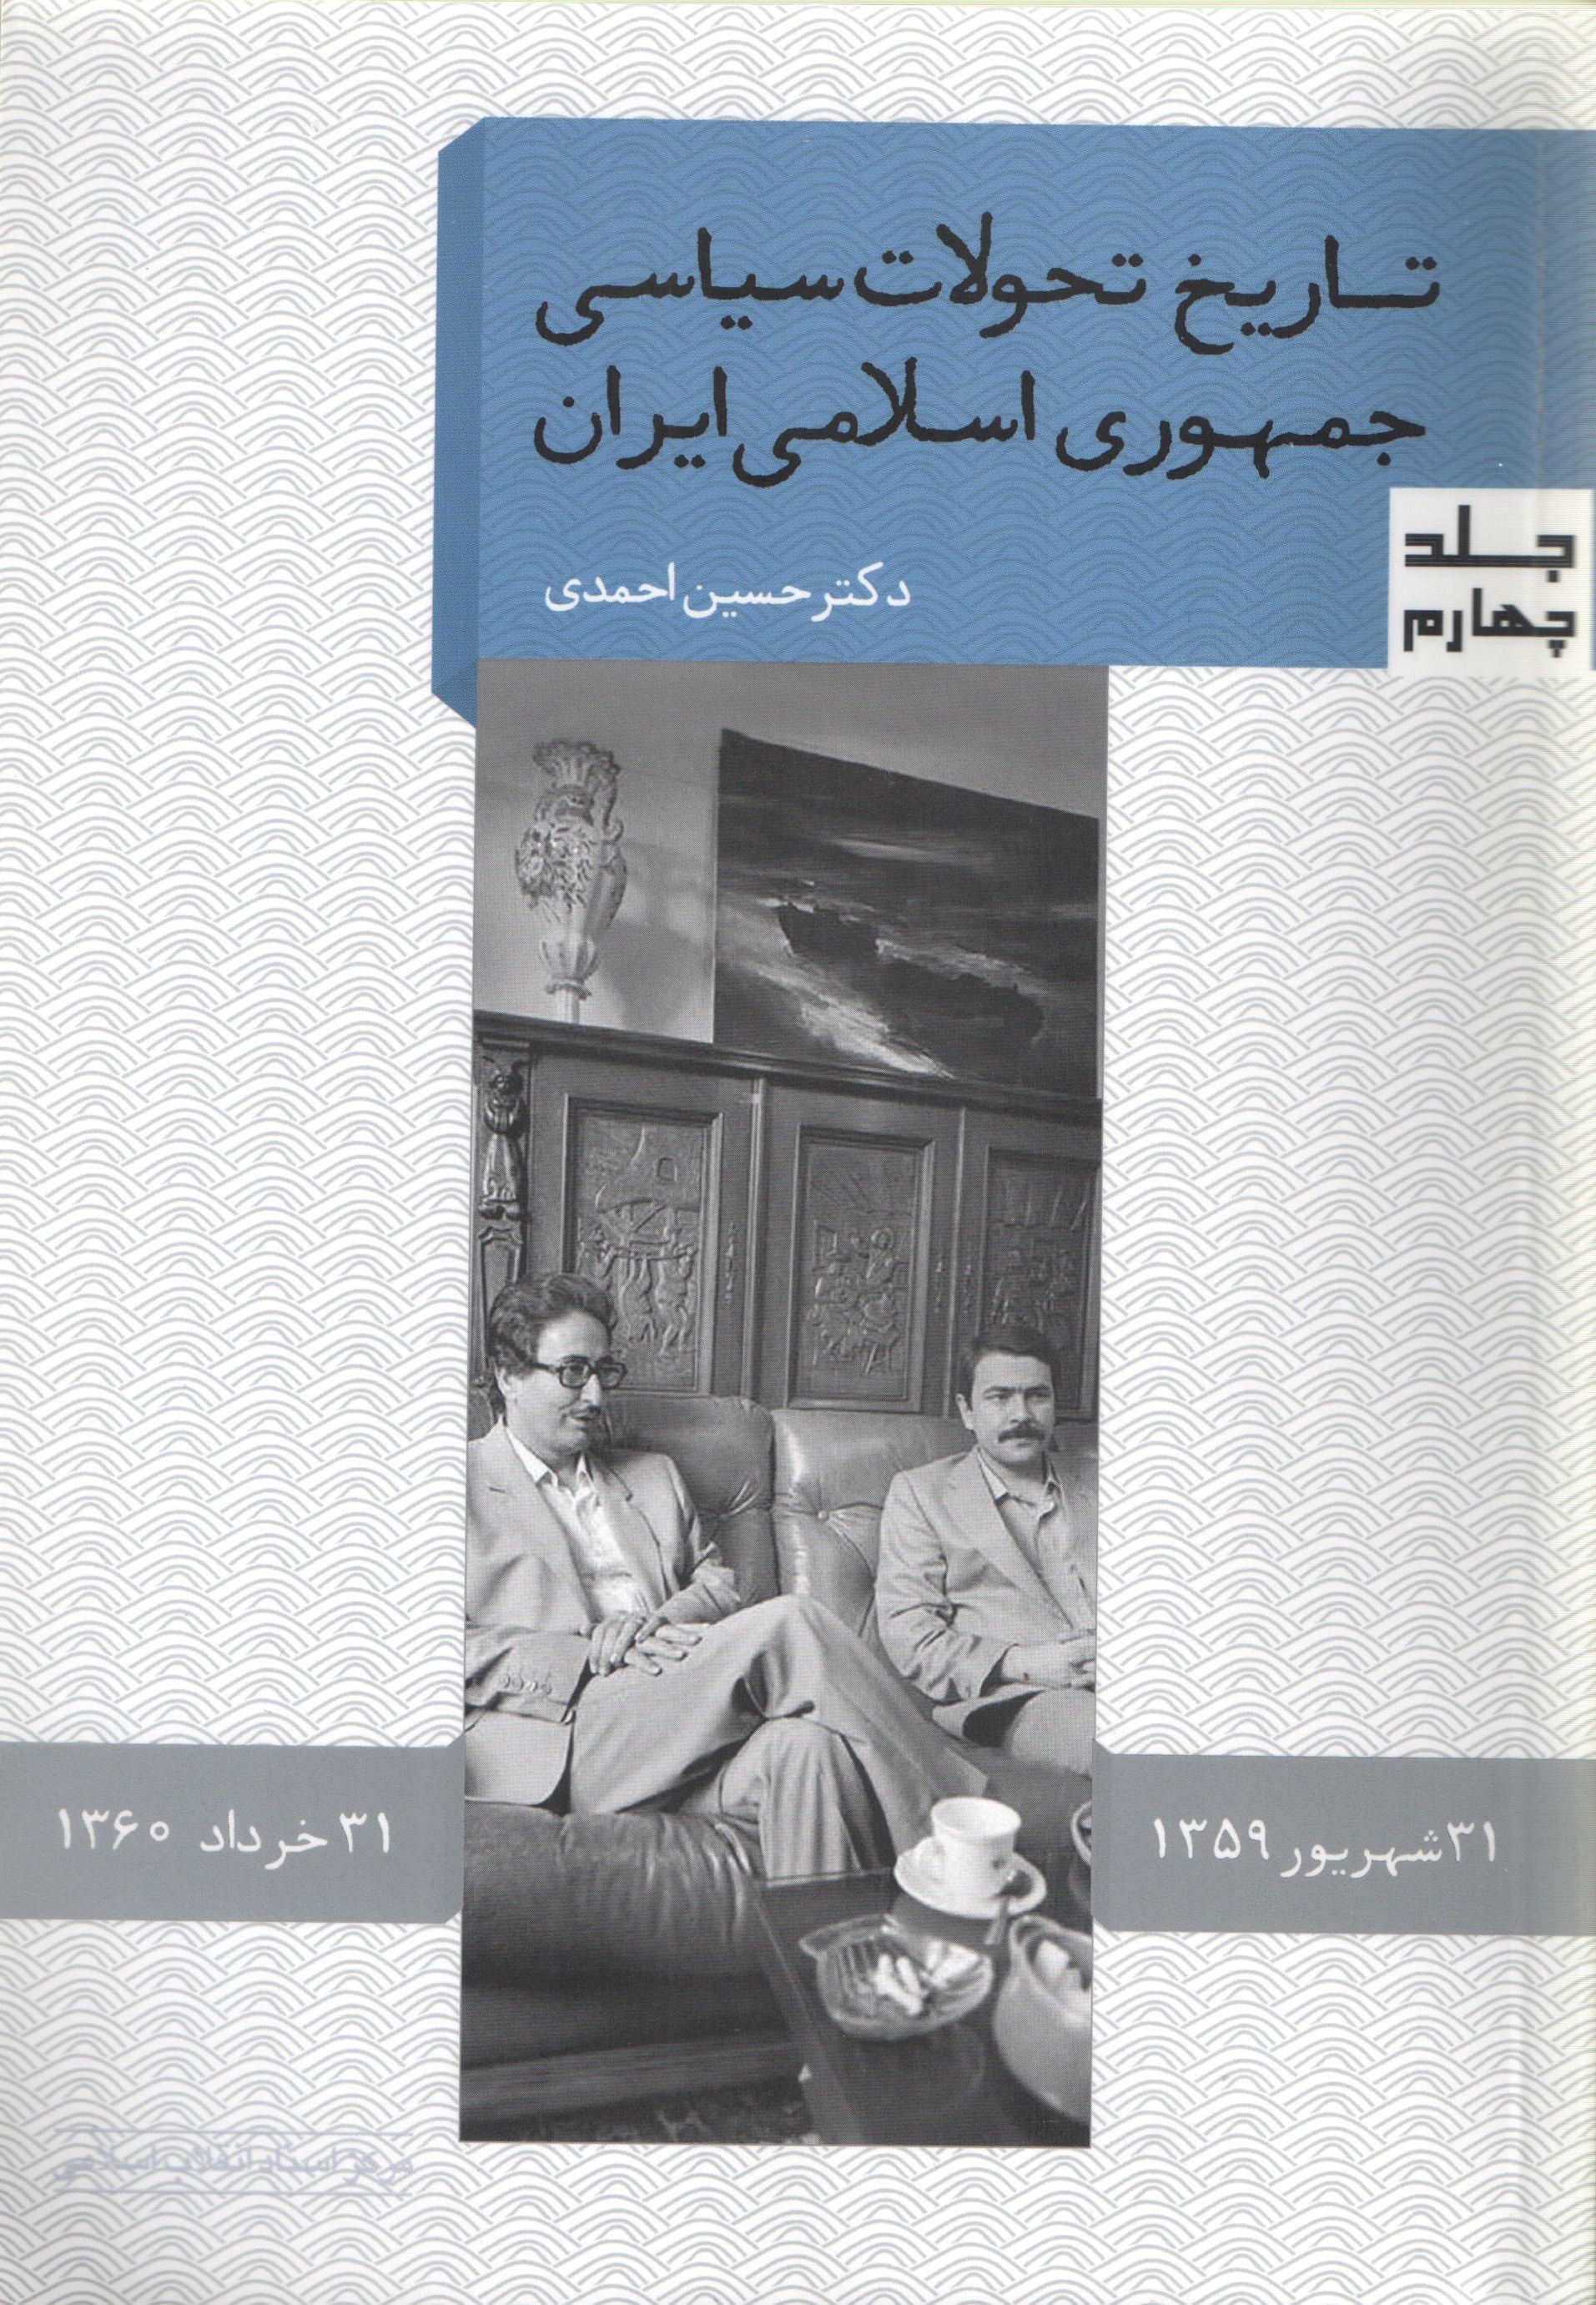 جلد چهارم از مجموعه «تاریخ تحولات جمهوری اسلامی ایران»